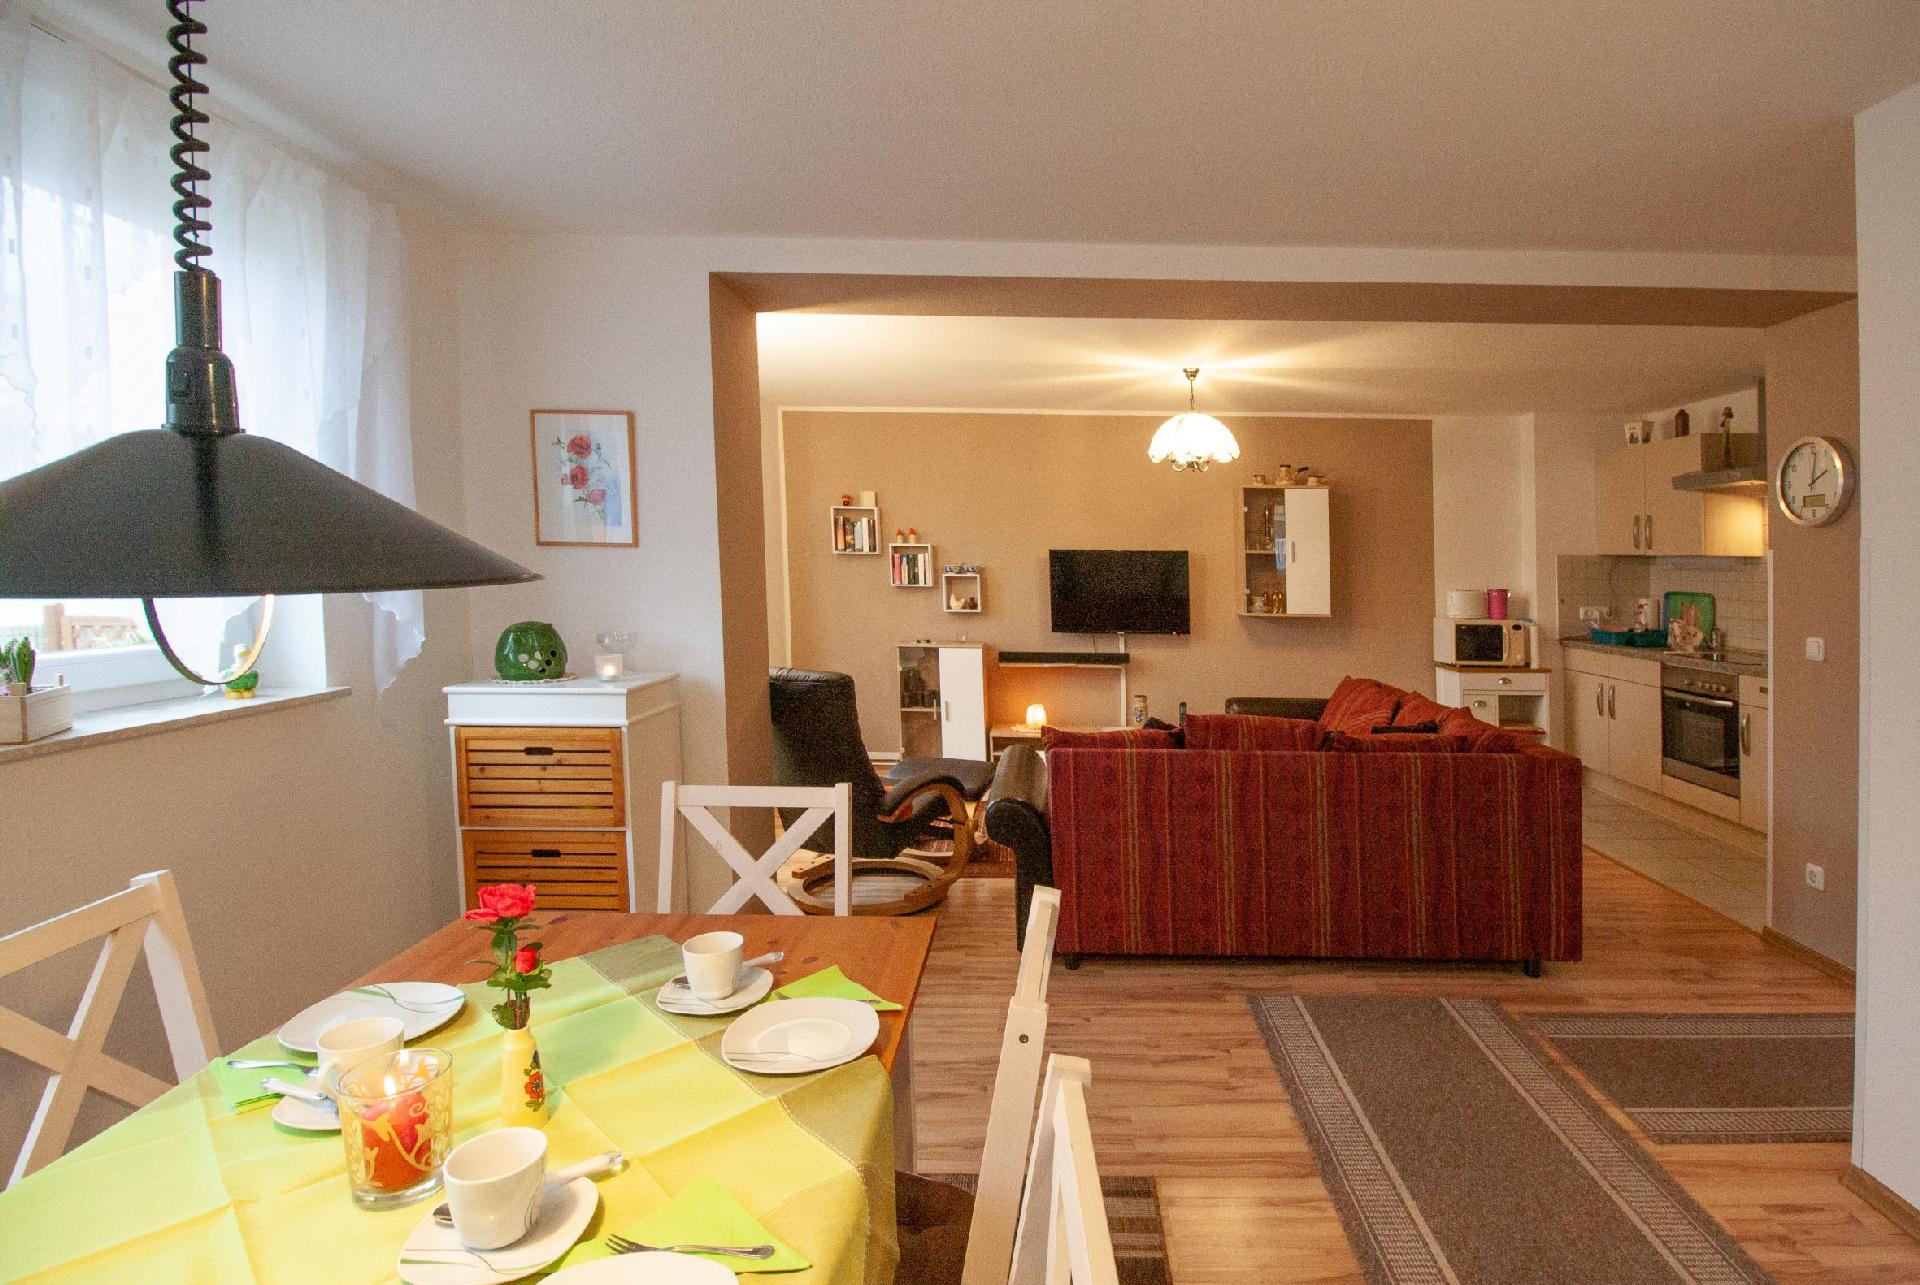 Appartement in Fleeth mit Garten, Grill und Terras Ferienhaus in Deutschland